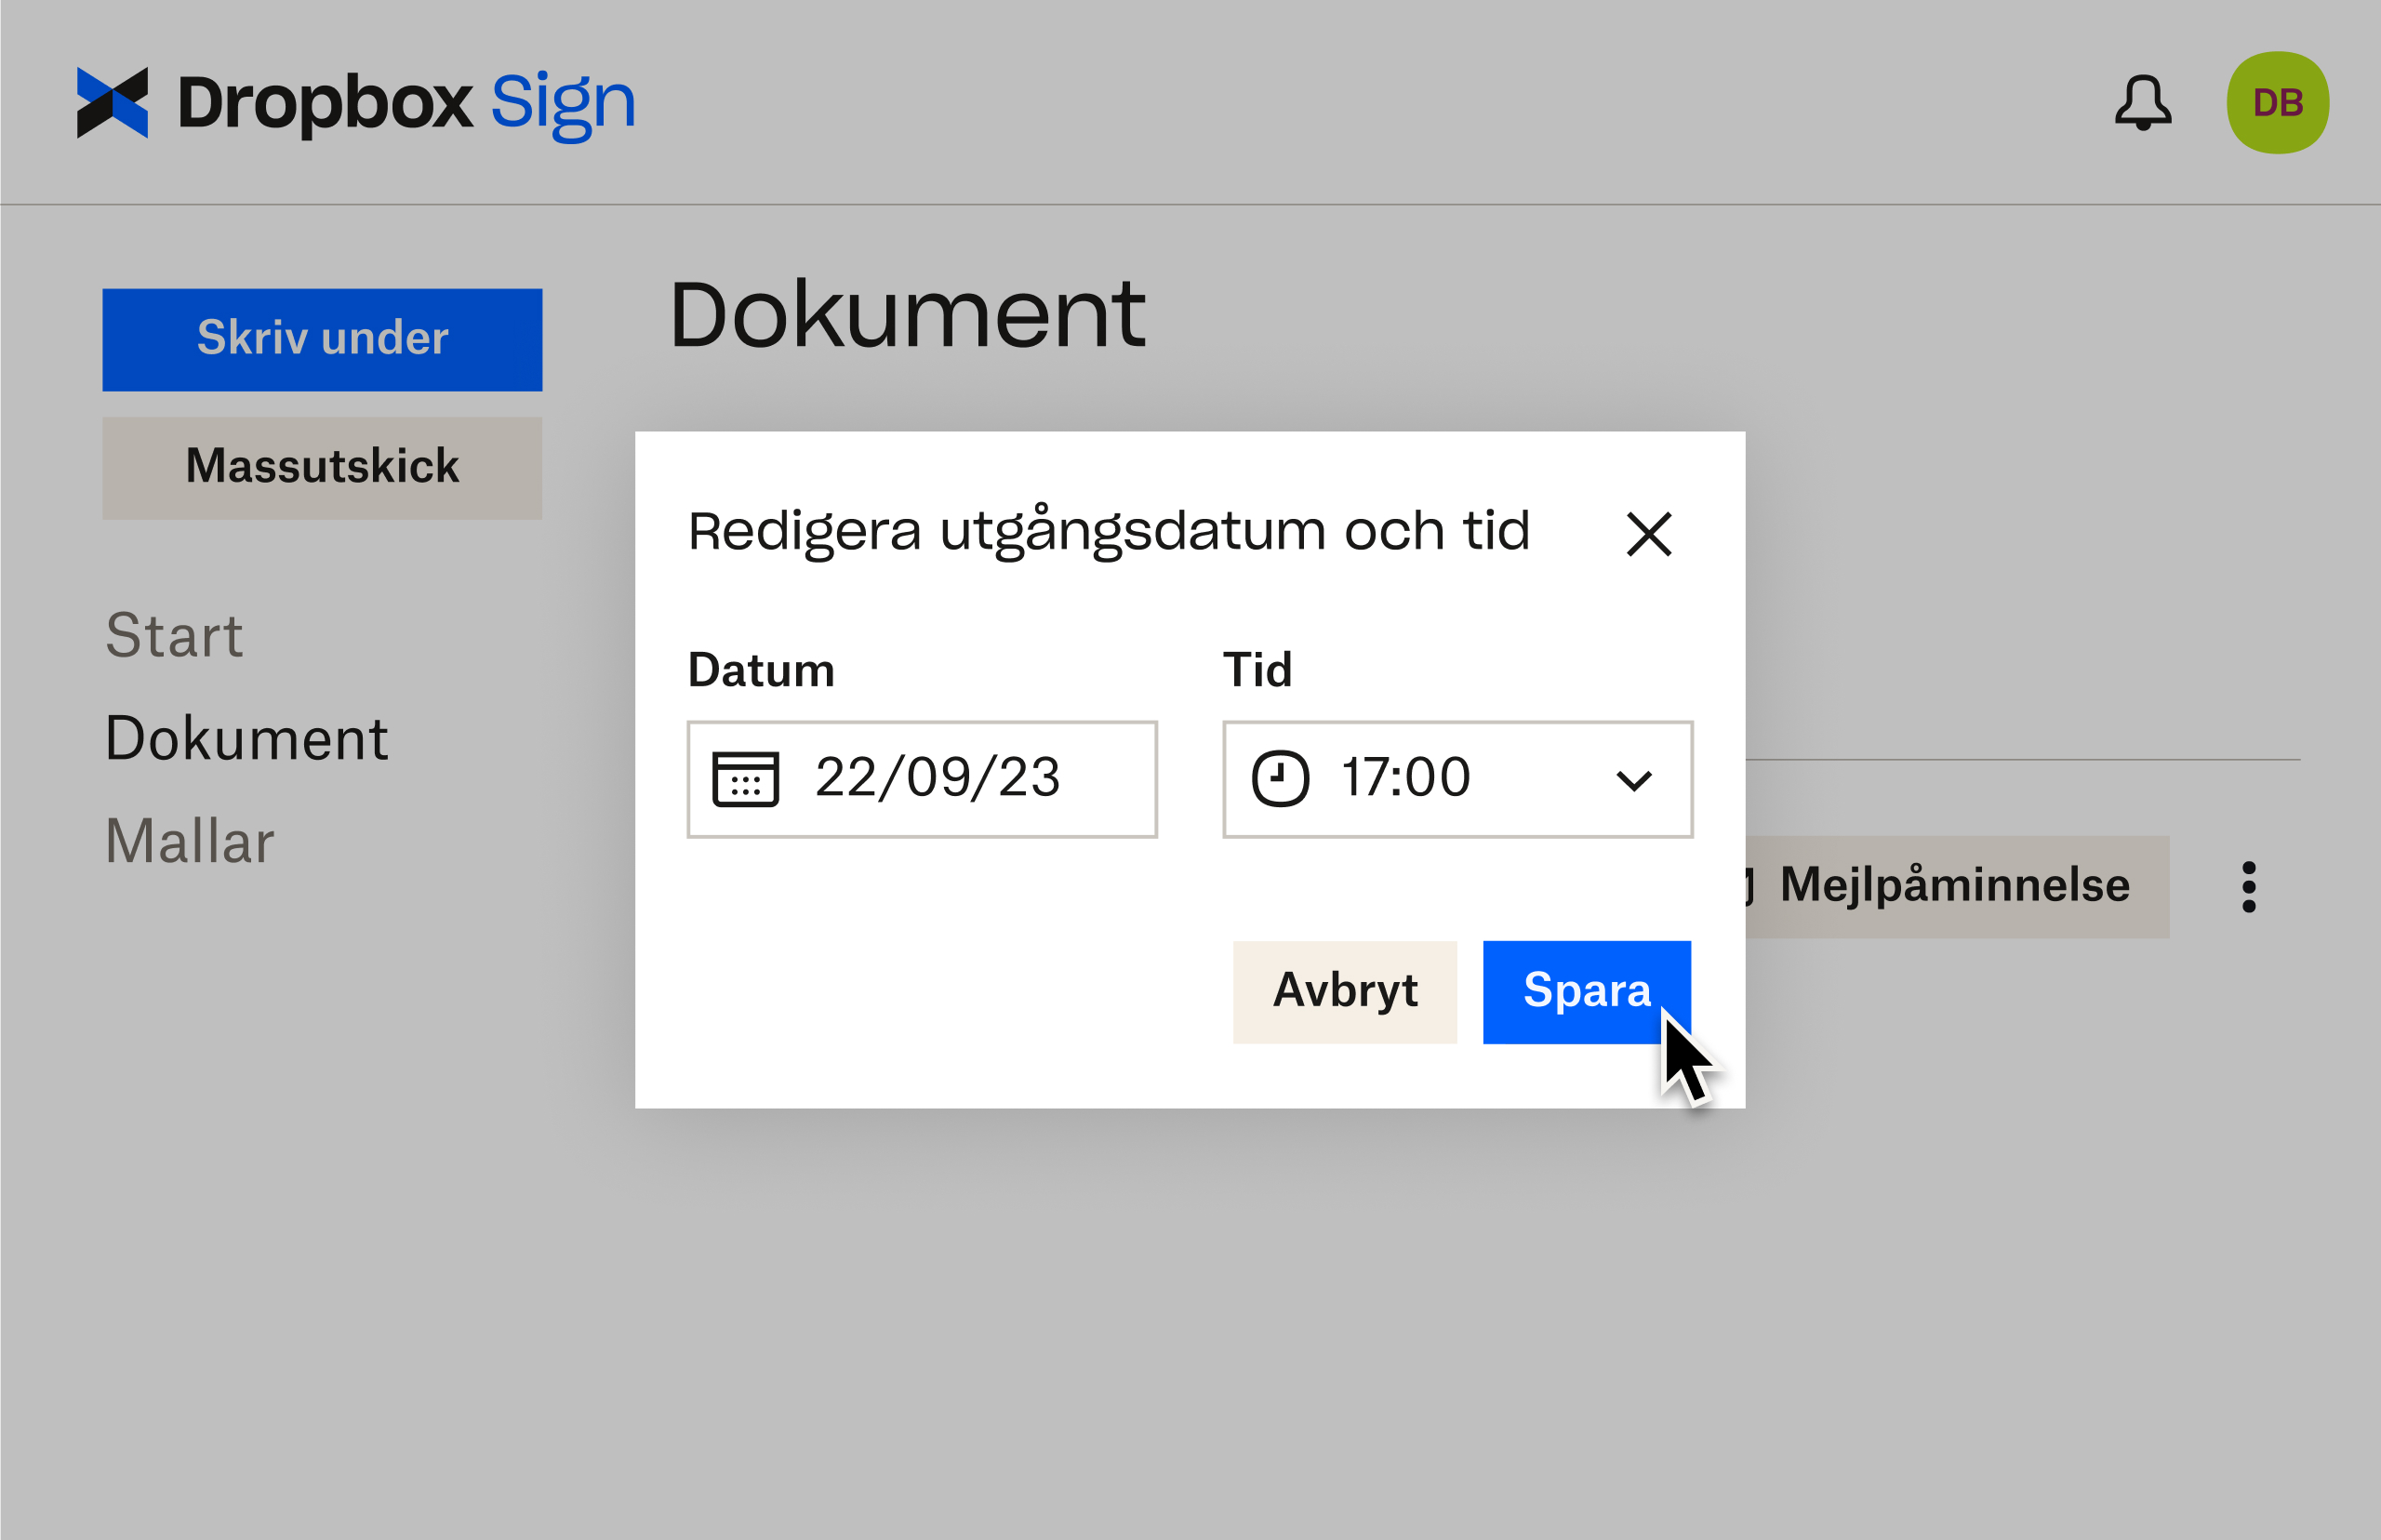 Dropbox Sign UI visar hur man redigerar utgångsdatum efter att ha skickat ett dokument för underskrift